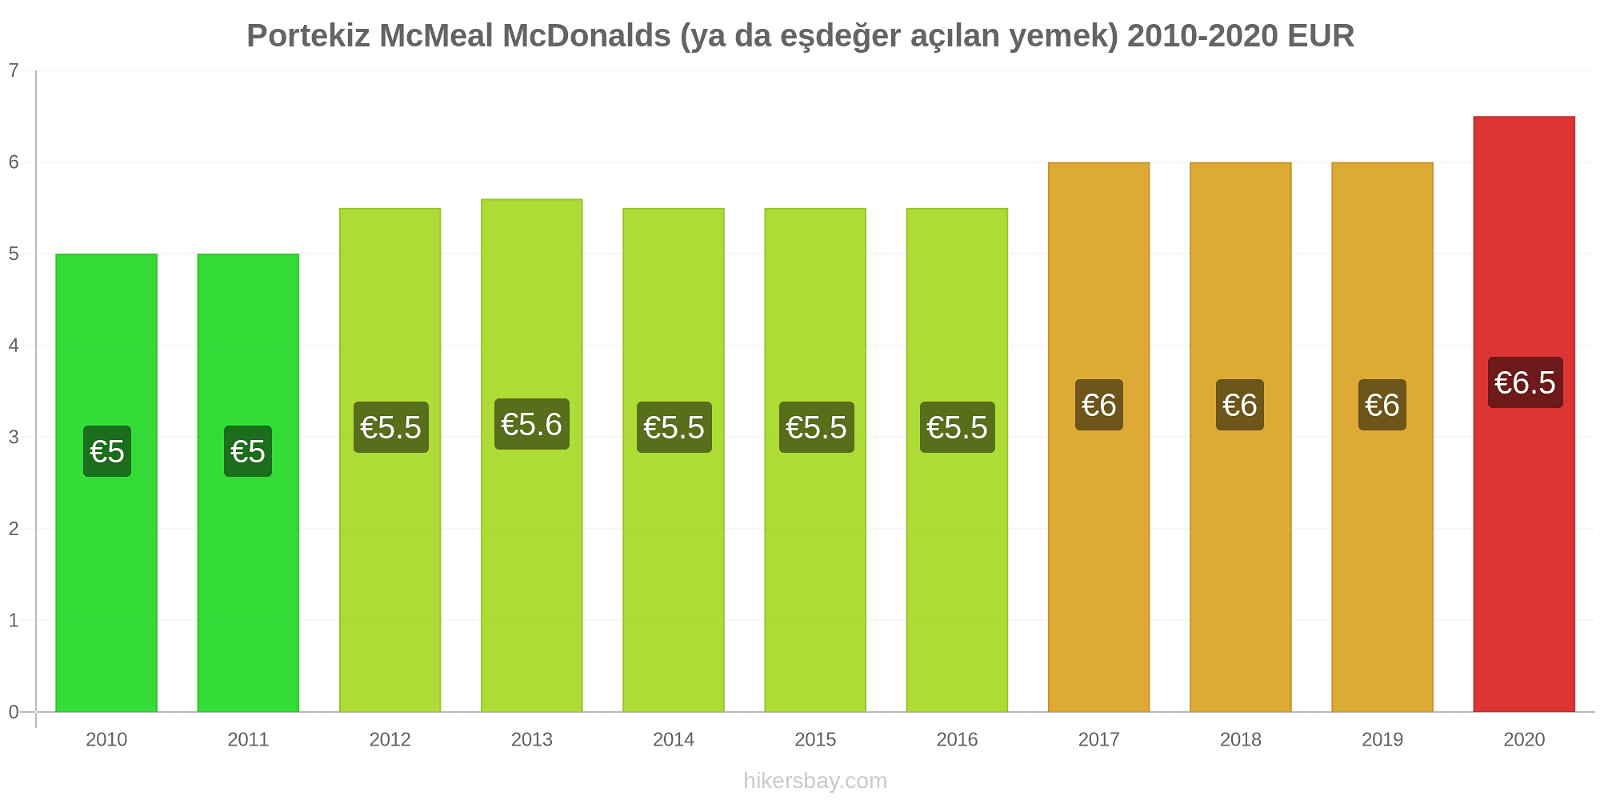 Portekiz fiyat değişiklikleri McMeal McDonalds (ya da eşdeğer açılan yemek) hikersbay.com